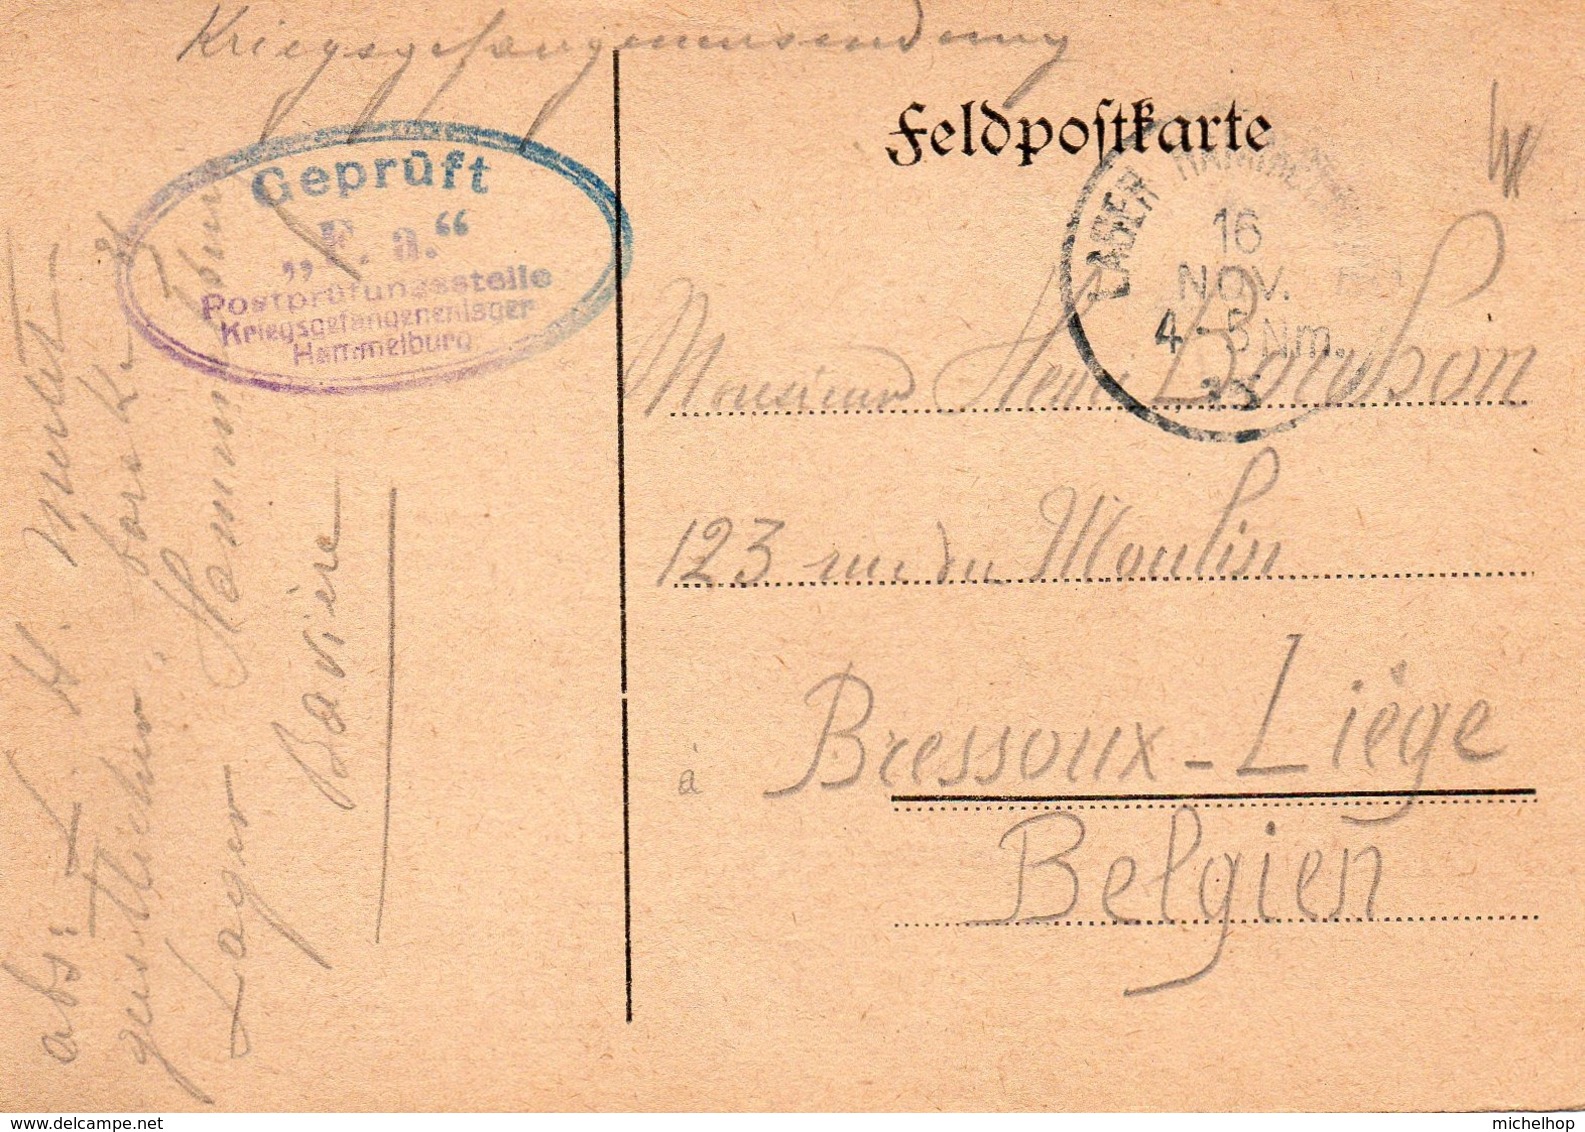 Feldpostkarte Expédiée Par Un Prisonnier Du Camp De Hammelburg Vers Bressoux-Liège - Prisonniers